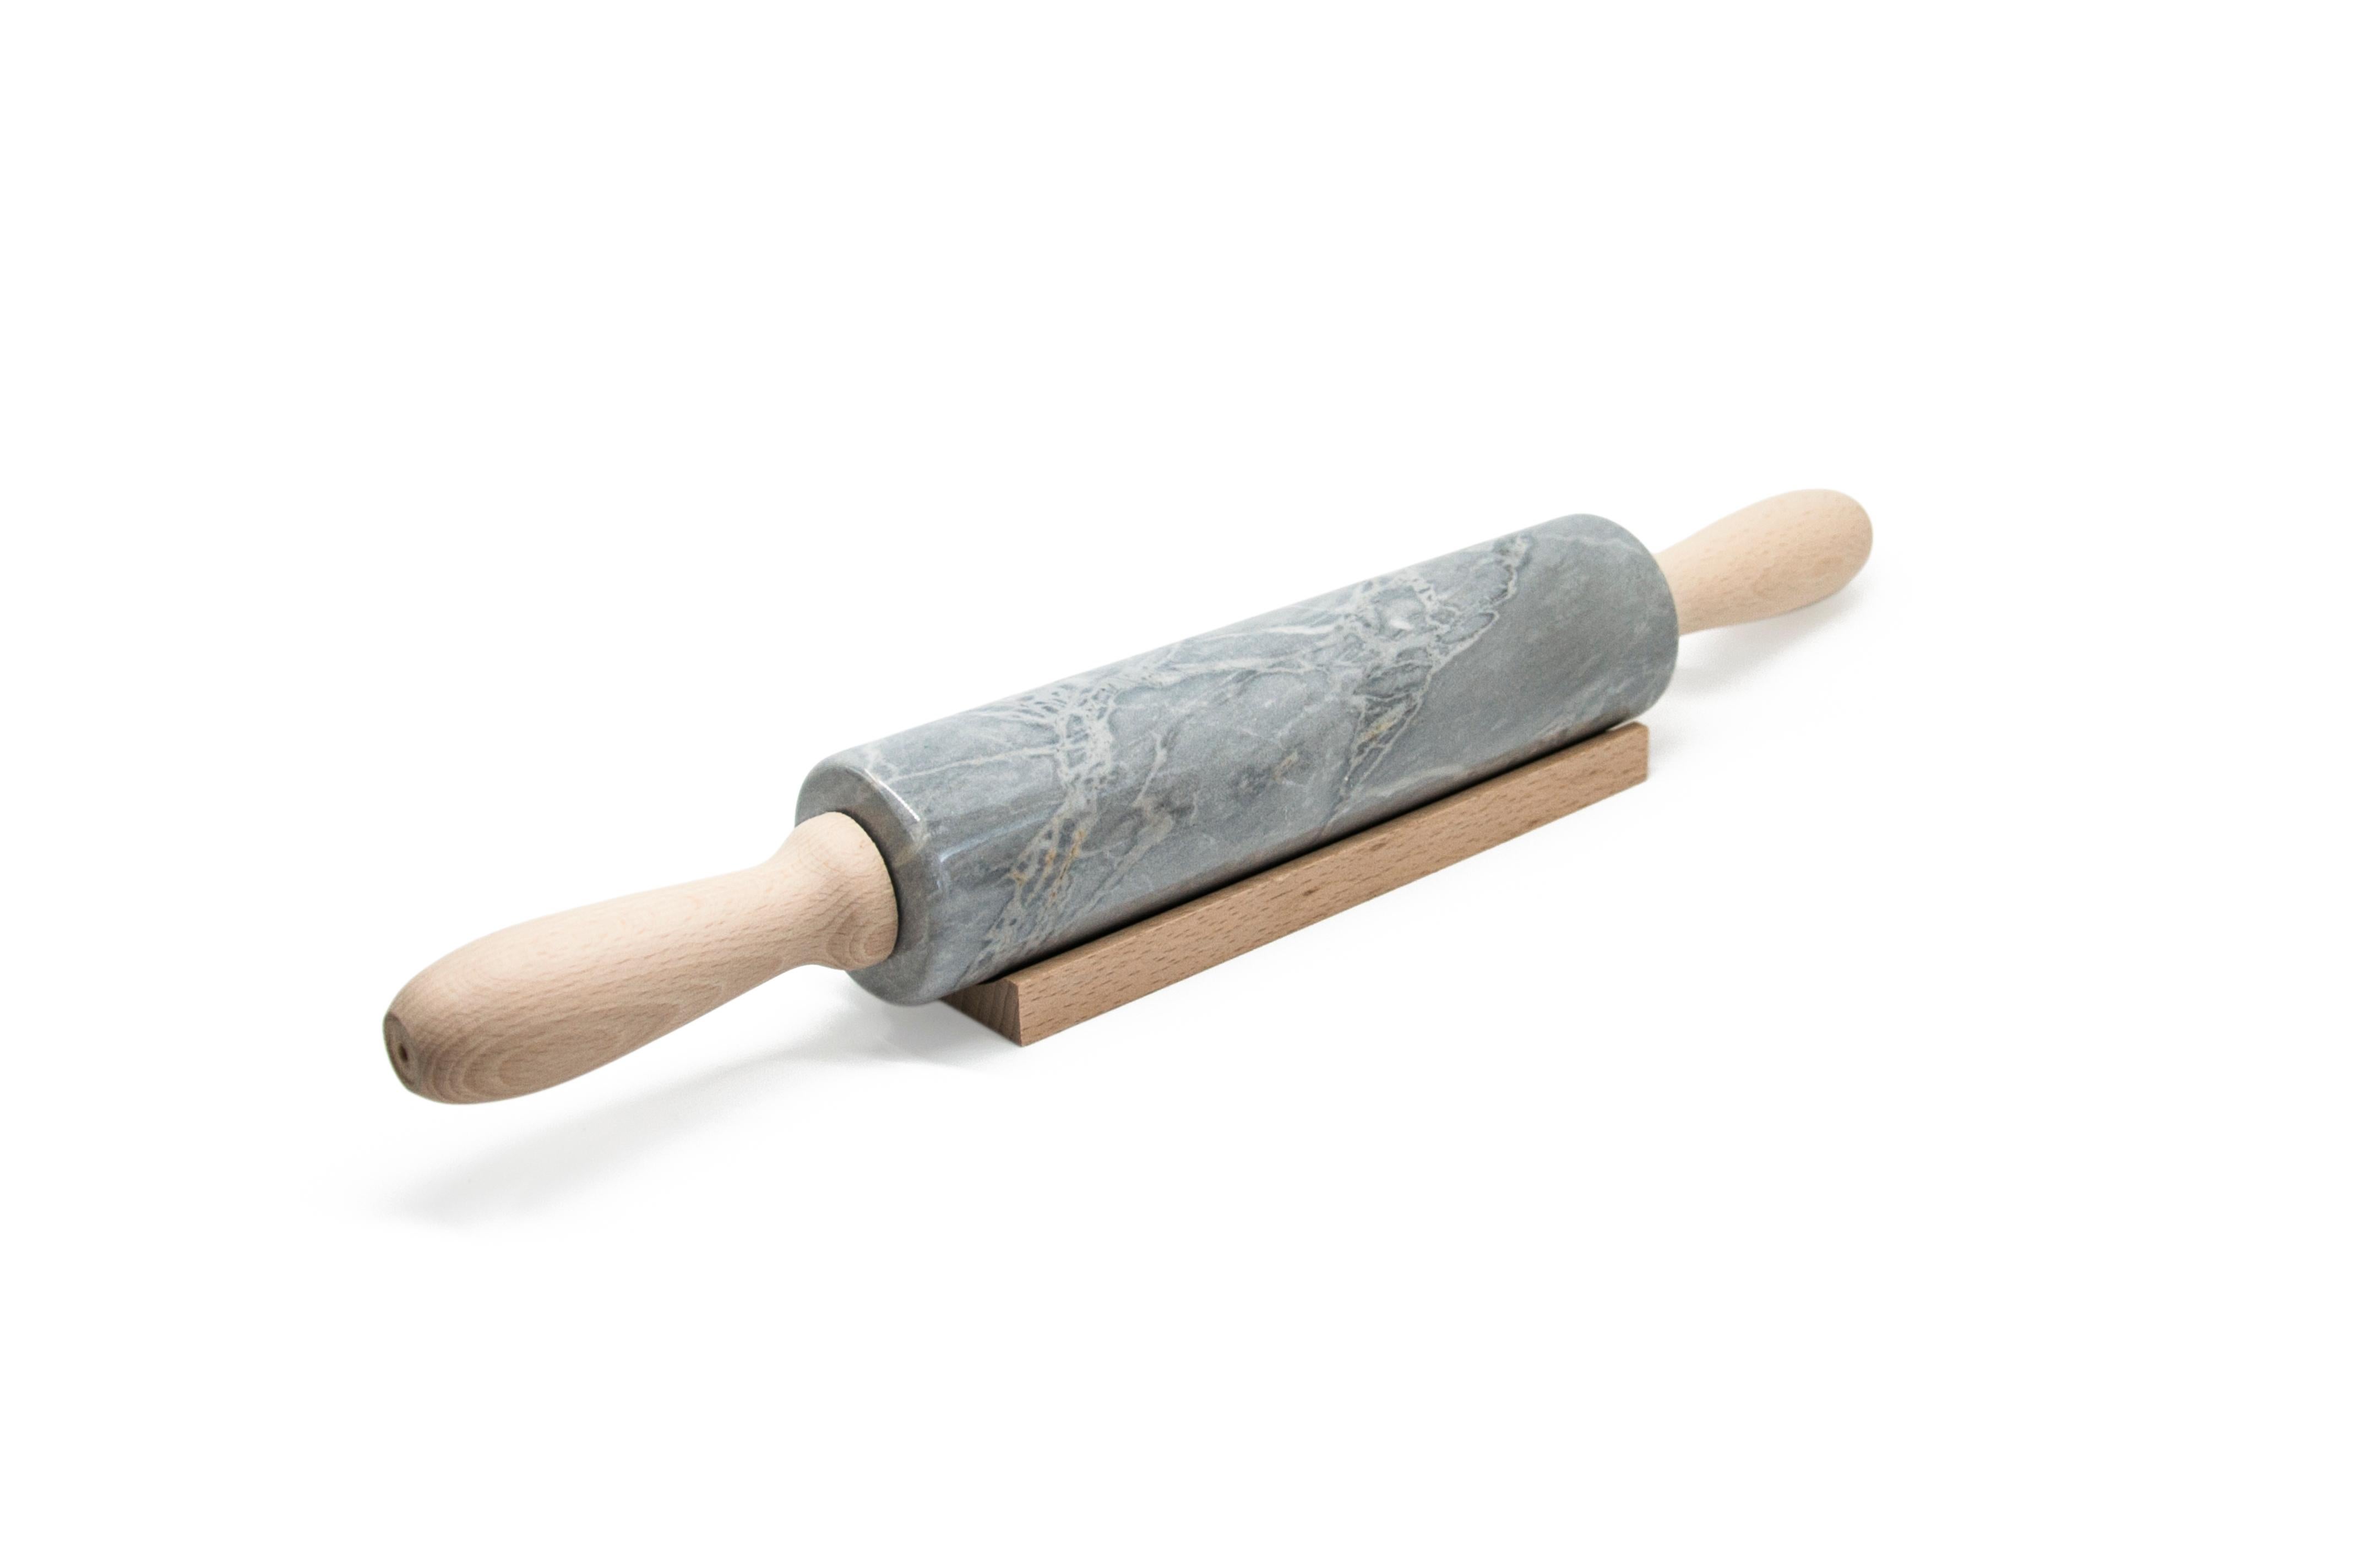 Nudelholz aus grauem Bardiglio-Marmor mit Holzgriffen. Er wird manuell zusammengebaut. Jedes Stück ist ein Unikat (jeder Marmorblock hat eine andere Maserung und Schattierung) und wird von italienischen Handwerkern, die seit Generationen auf die